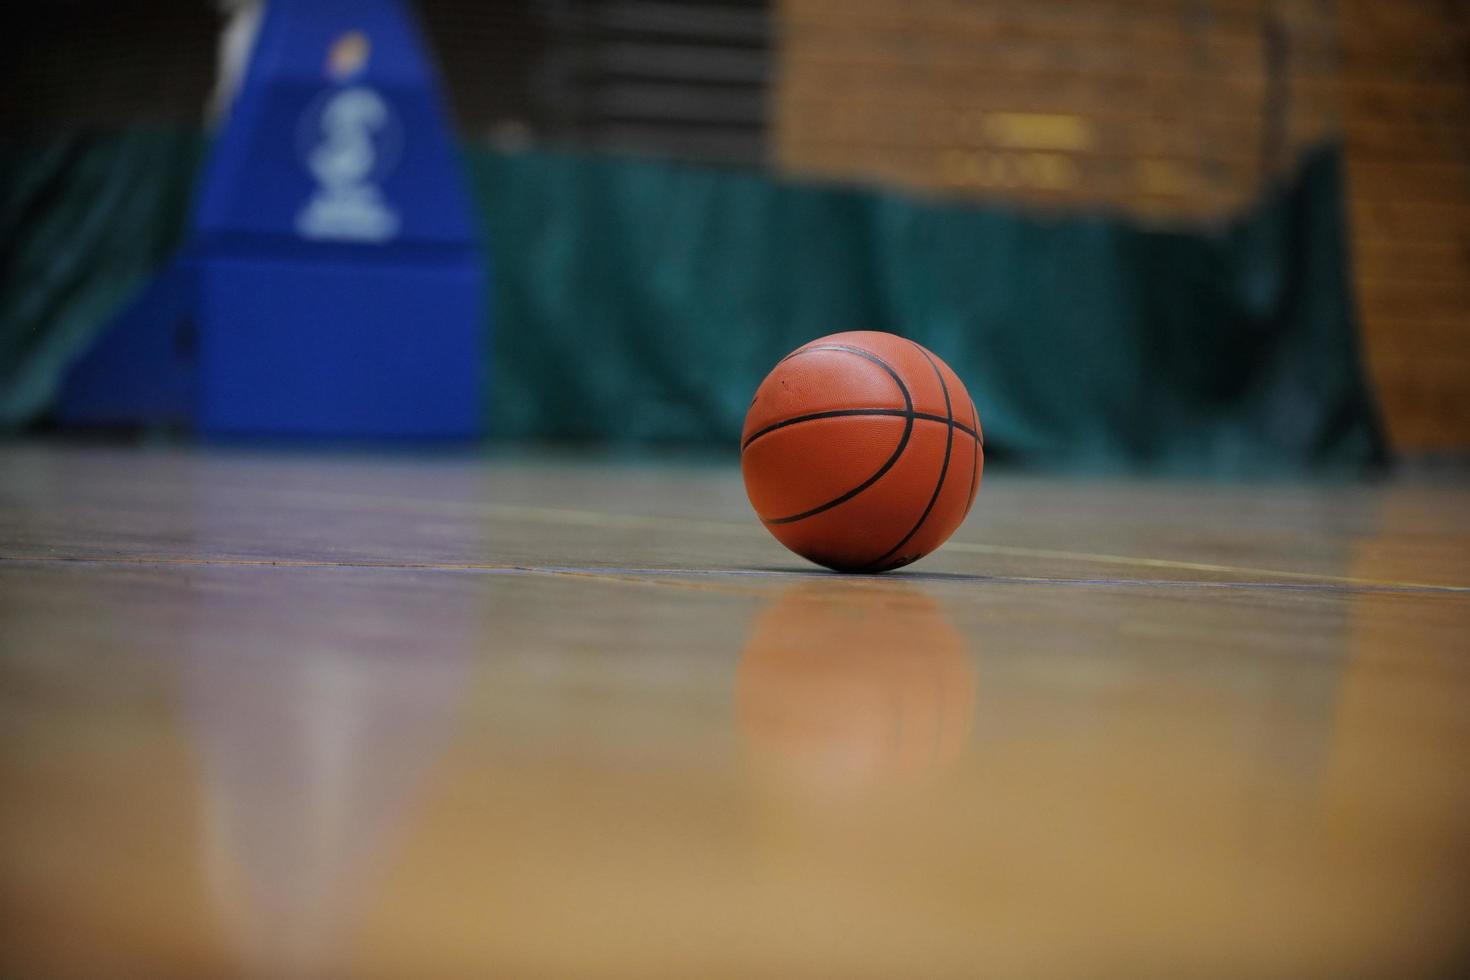 bola de basquete e net em fundo preto foto